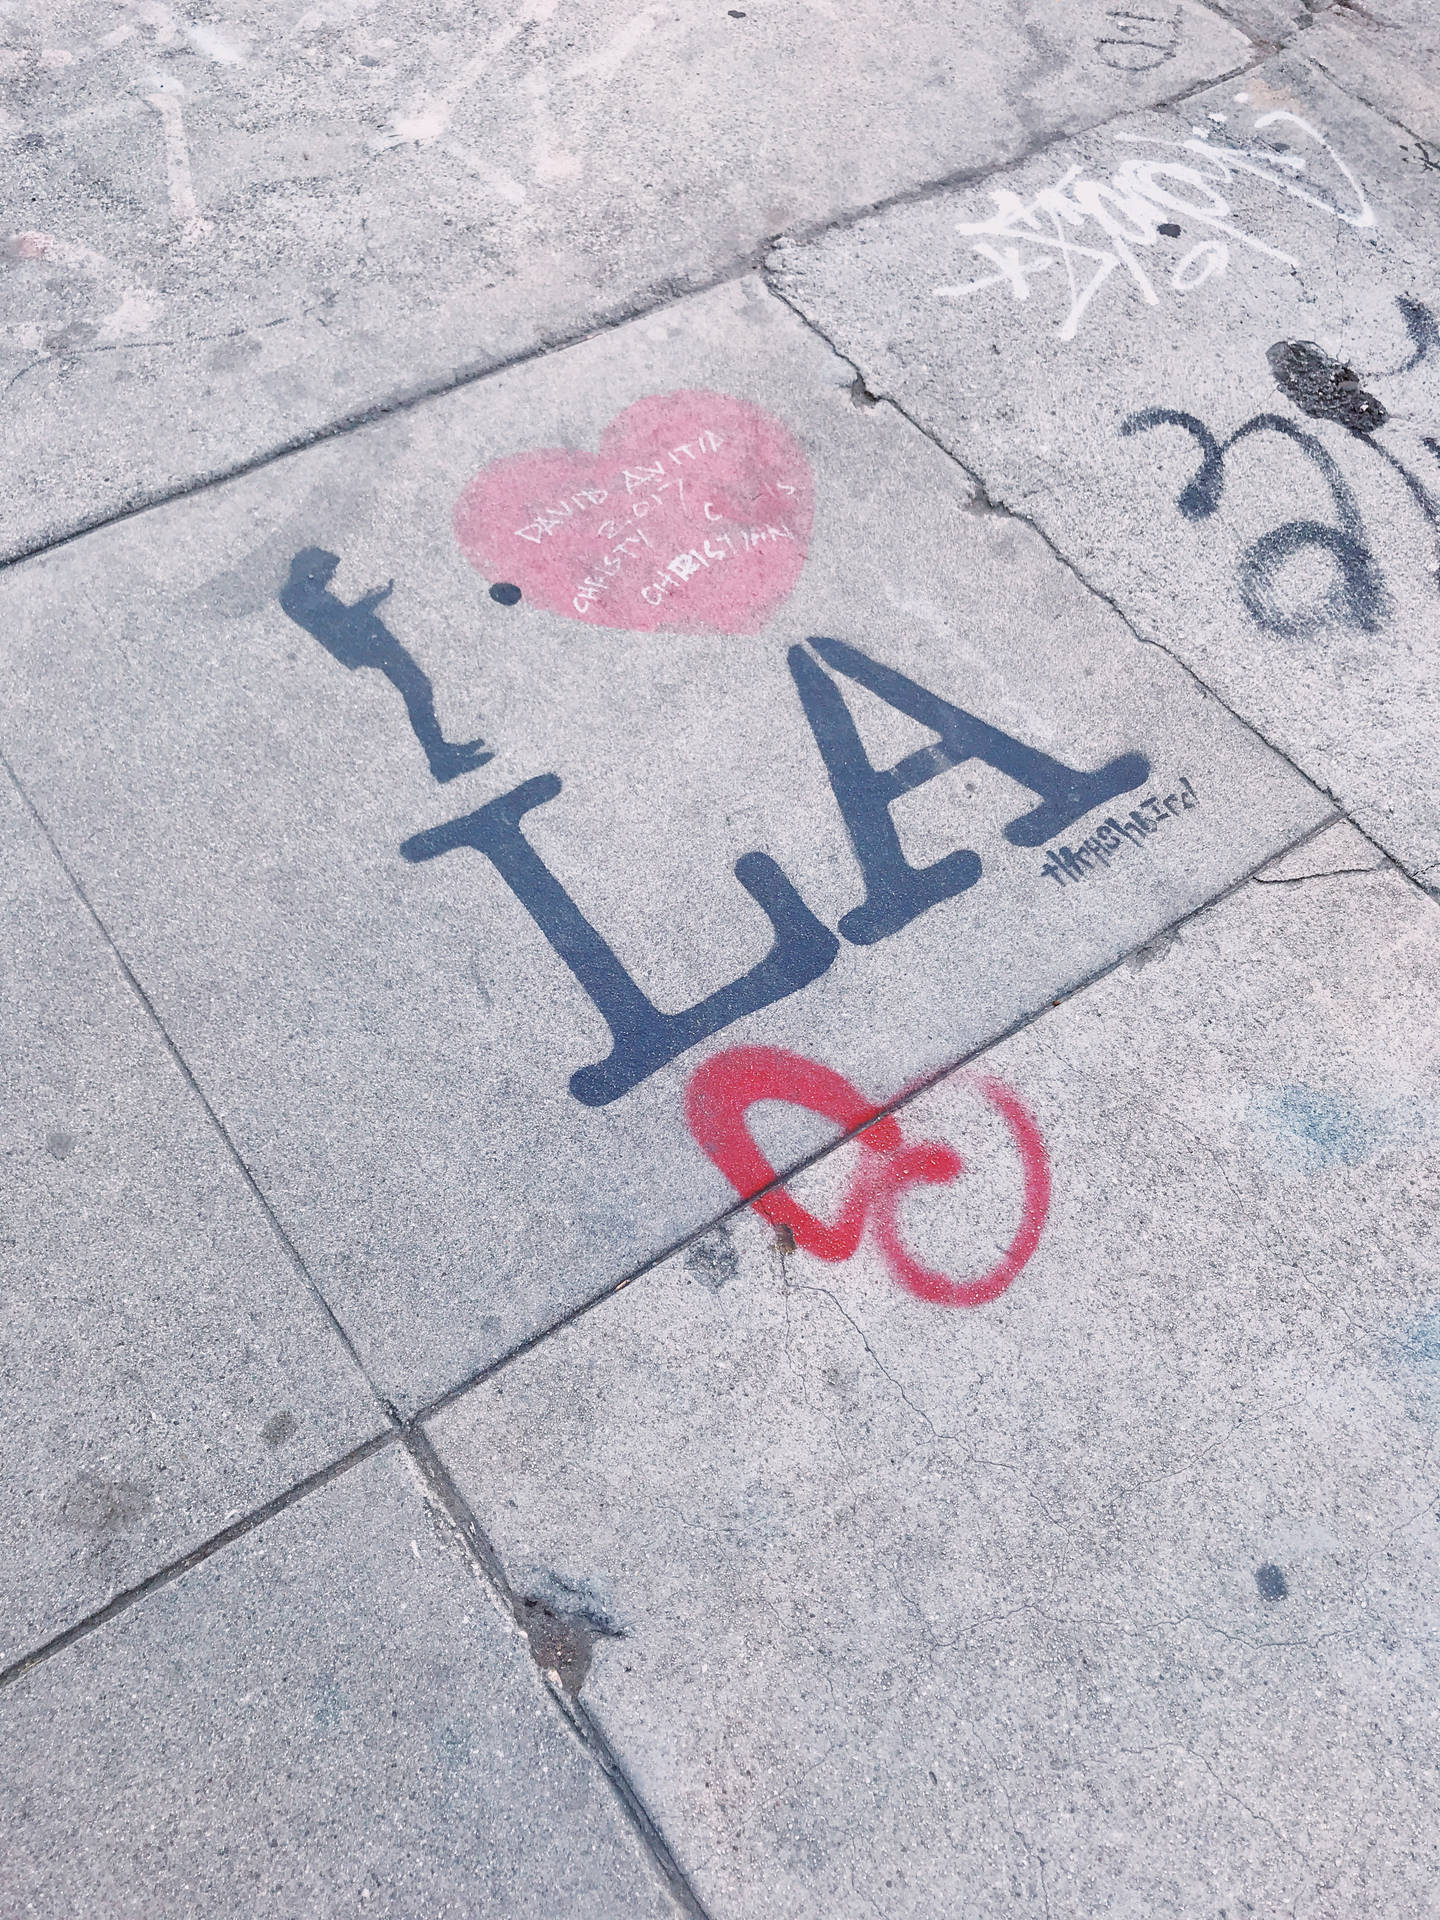 Lo Fi La Graffiti On Pavement